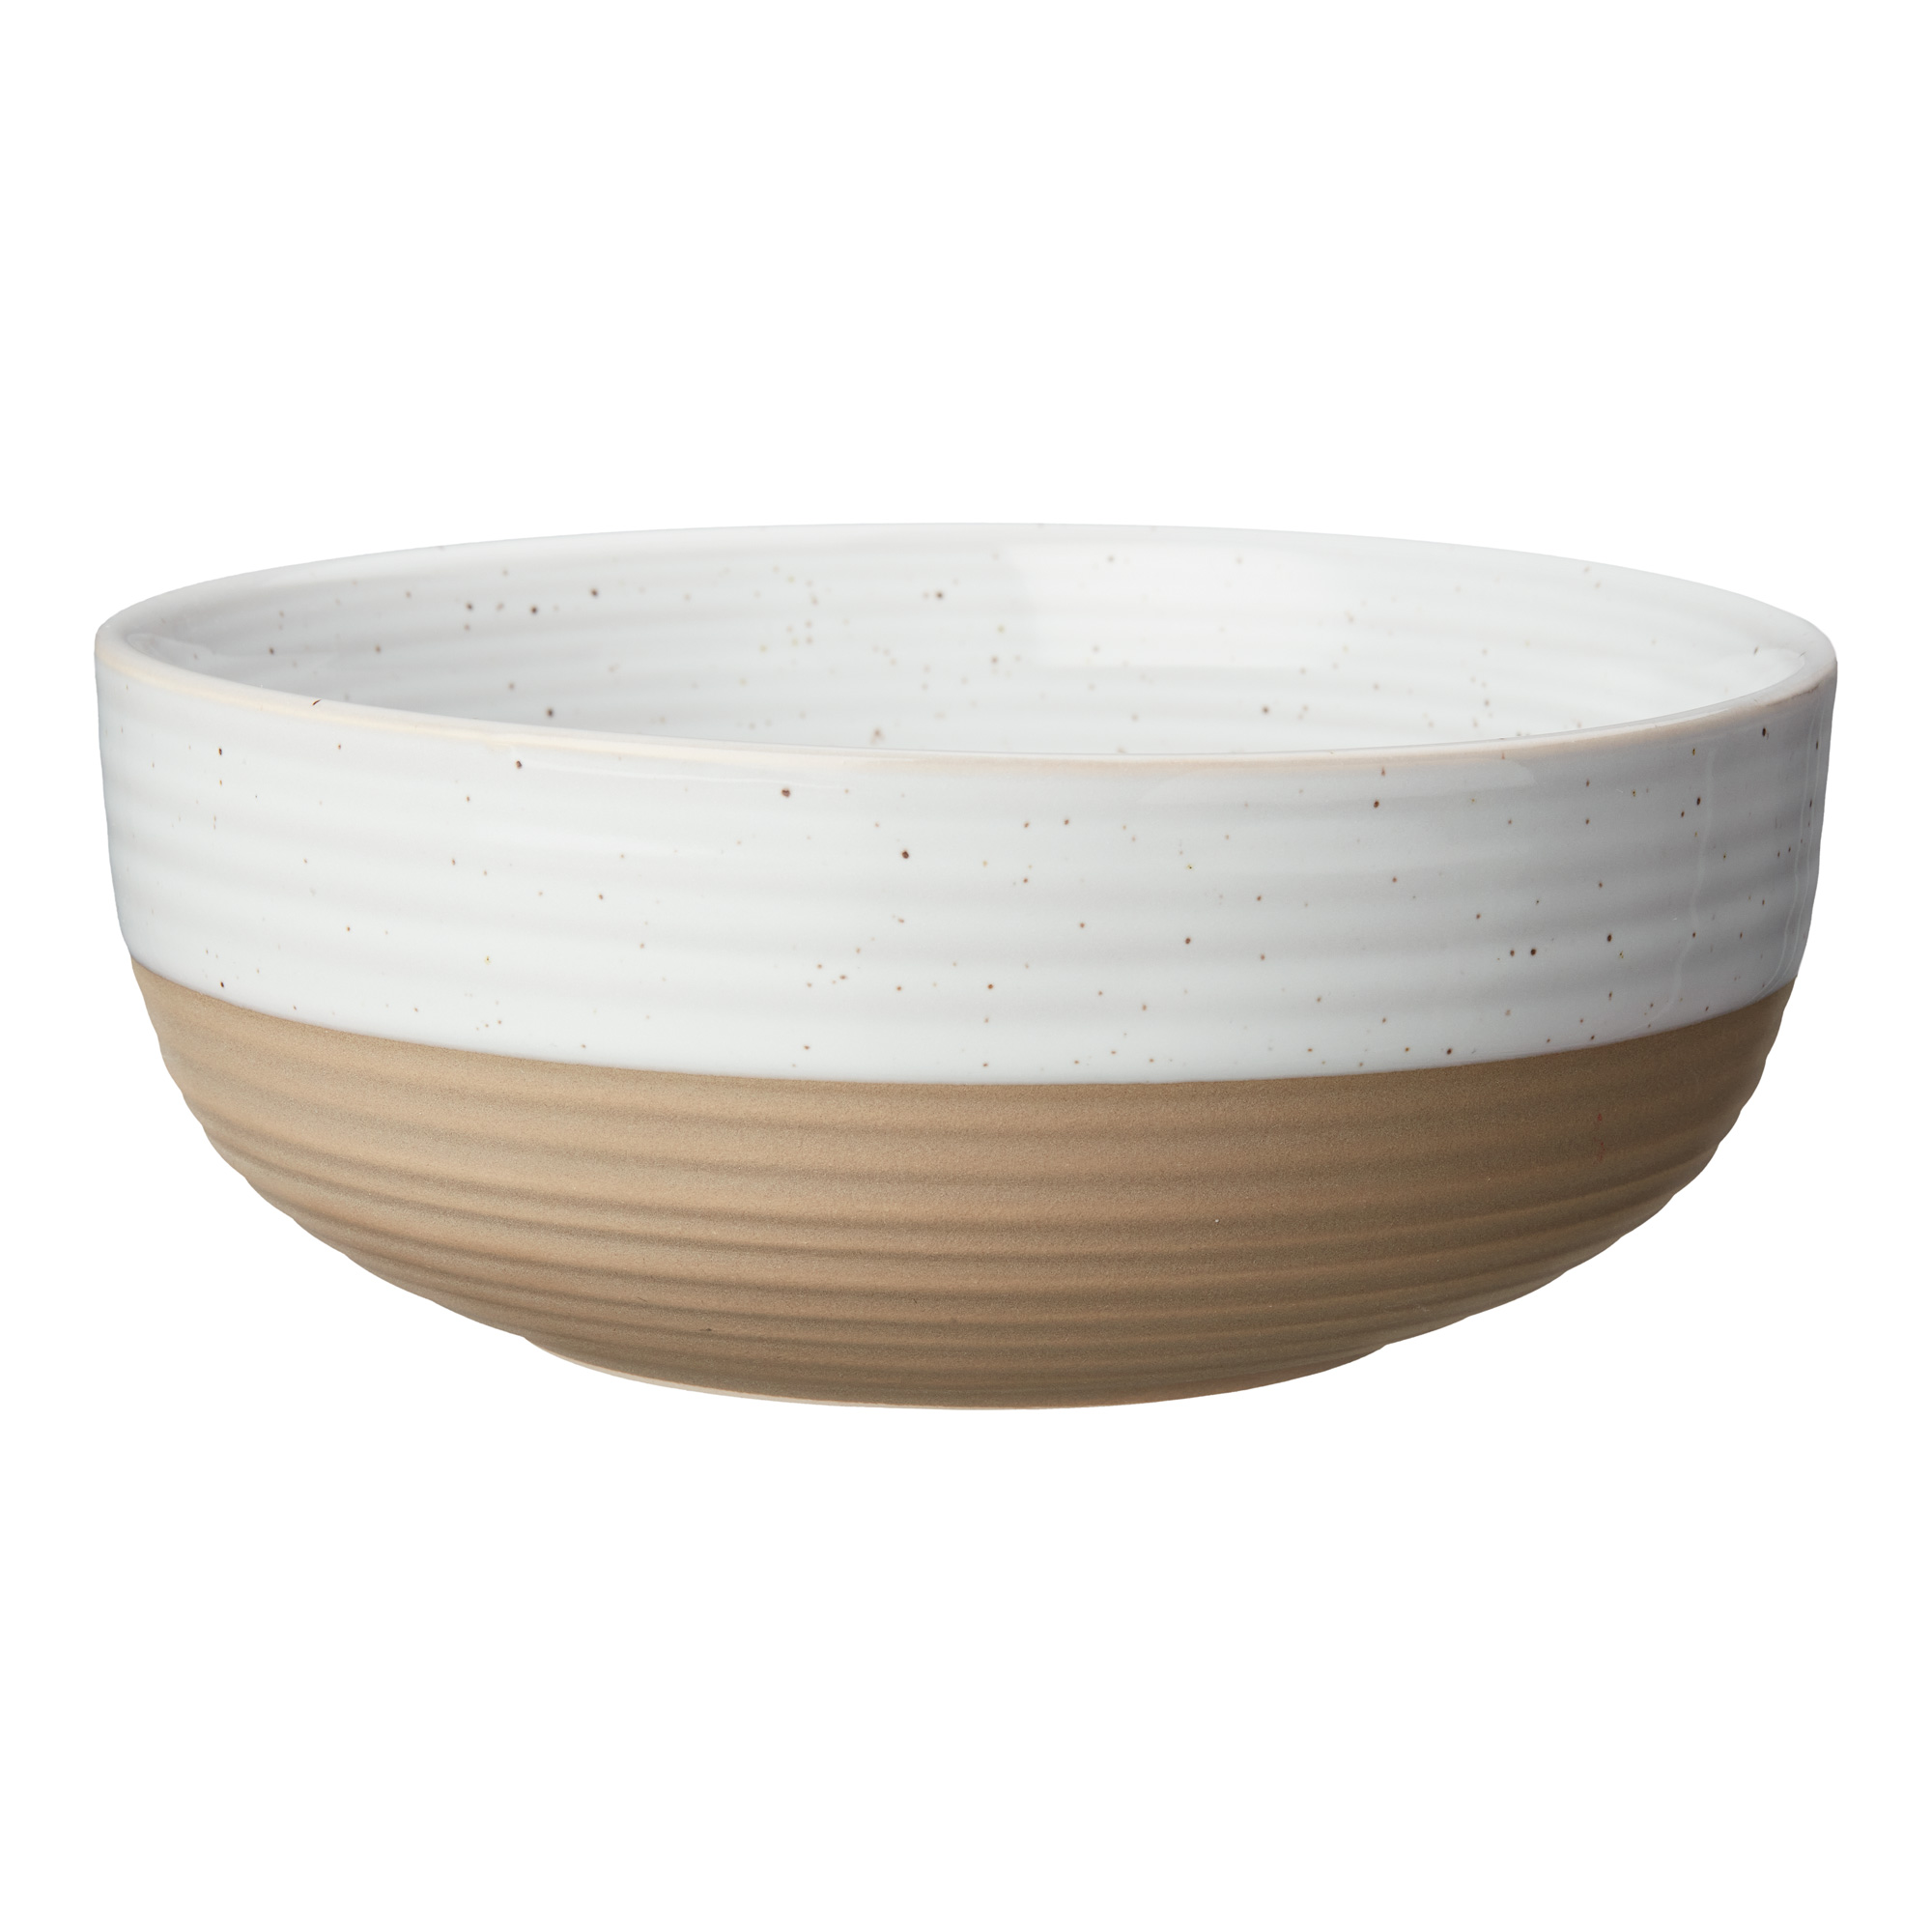 Better Homes & Gardens- Abott White Round Stoneware 16-Piece Dinnerware Set - image 4 of 12